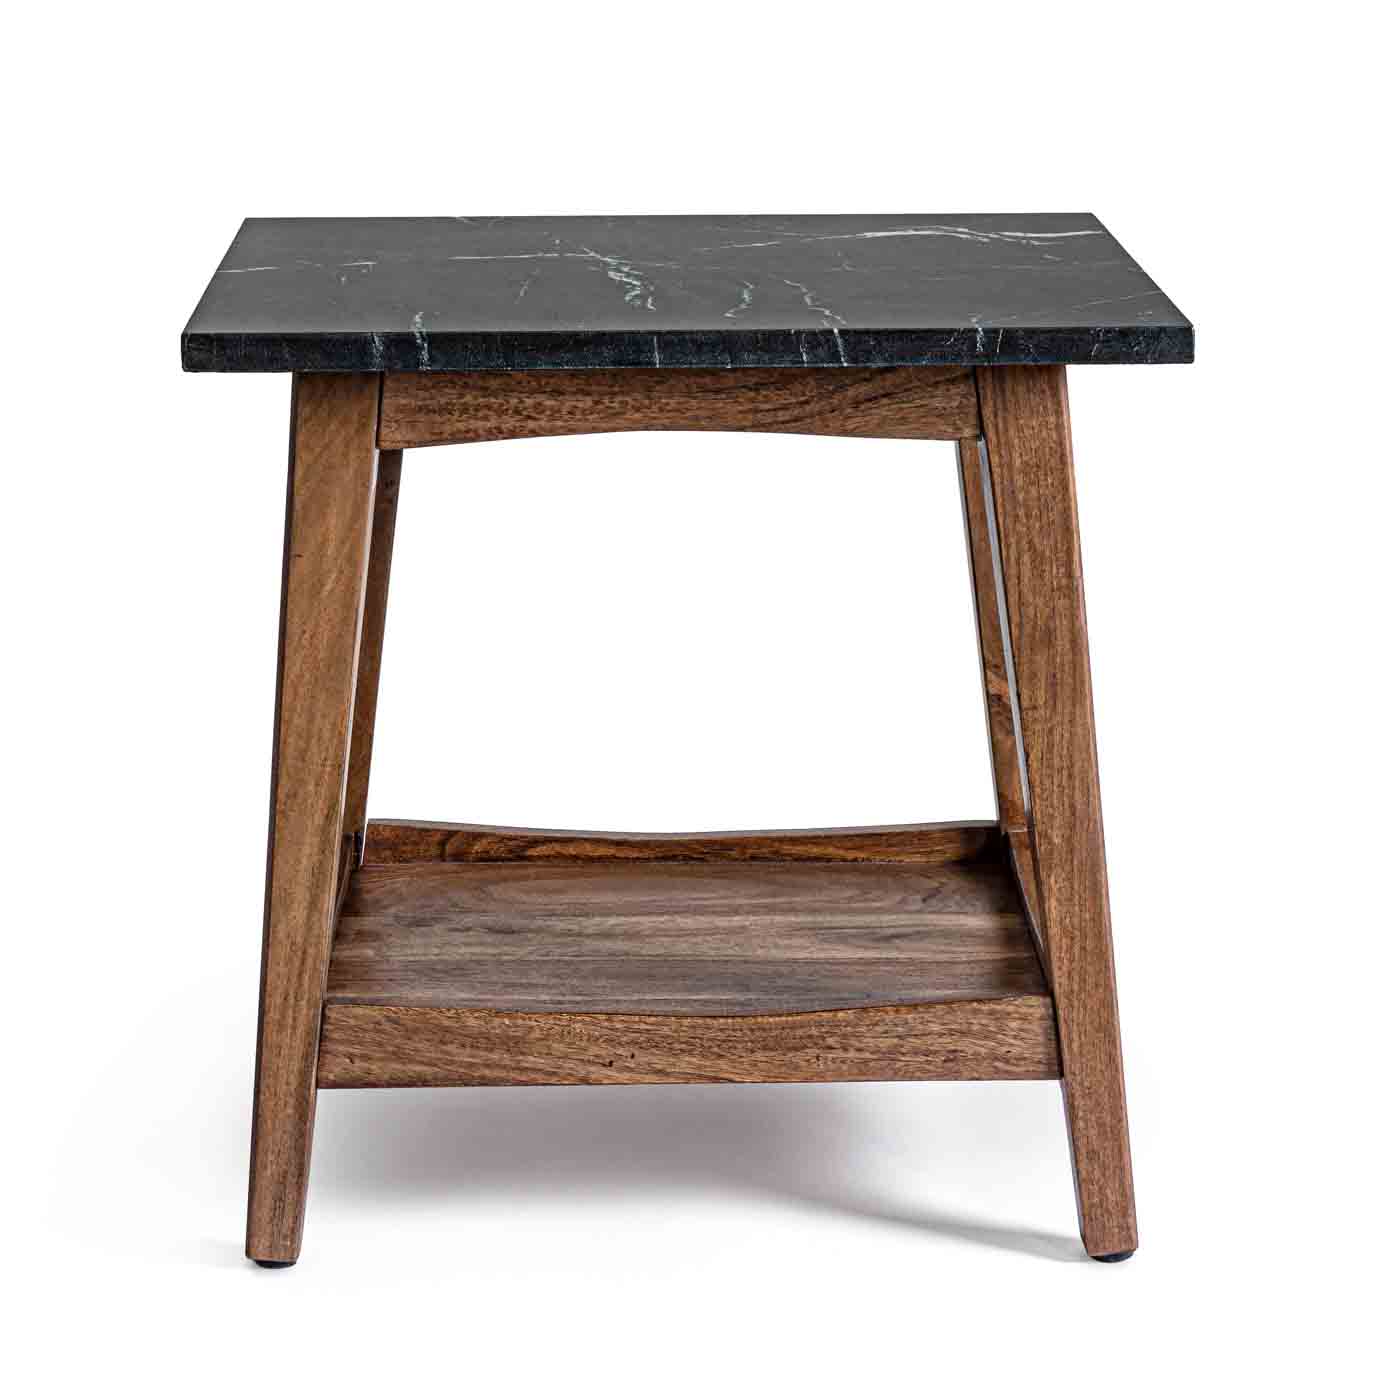 Stilvoller Couchtisch Pueblo wurde aus einem Akazienholzgestell gefertigt. Die Oberfläche ist aus Marmor. Der Tisch besitzt eine Unterplatte für ausreichend Stauraum.